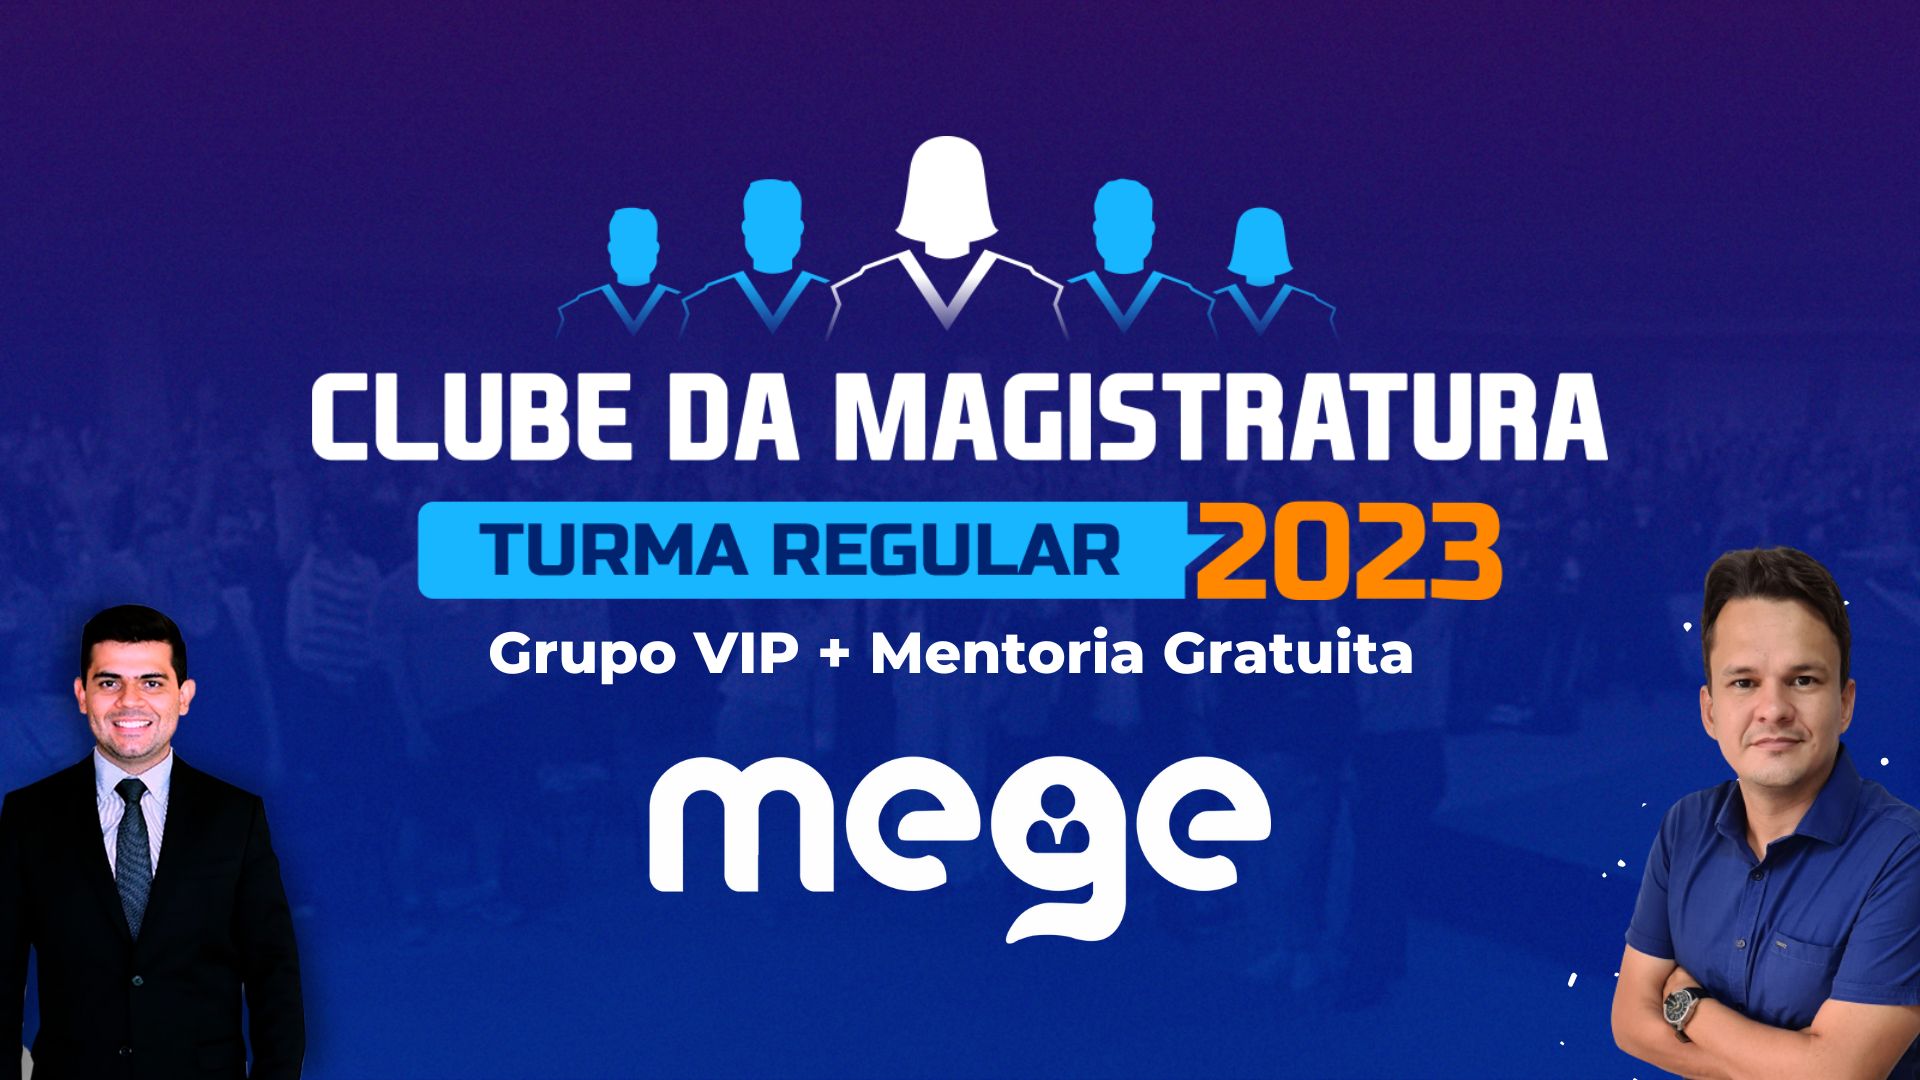 Clube da Magistratura 2023: inicie o ano com uma mentoria gratuita!